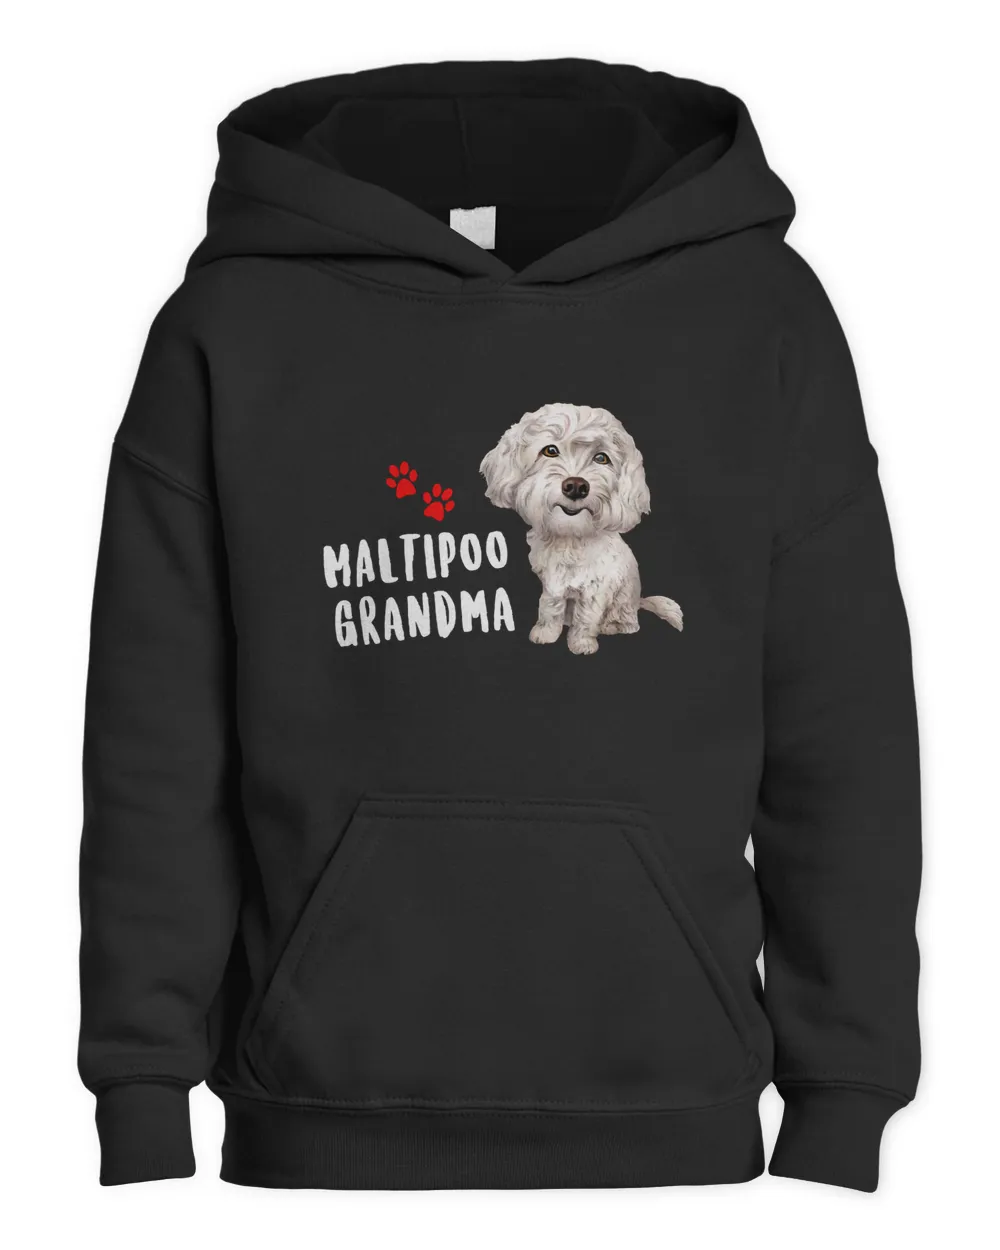 Maltipoo Grandma Dog Shirt Perfect For Maltese Poodle Dog Mom Gift